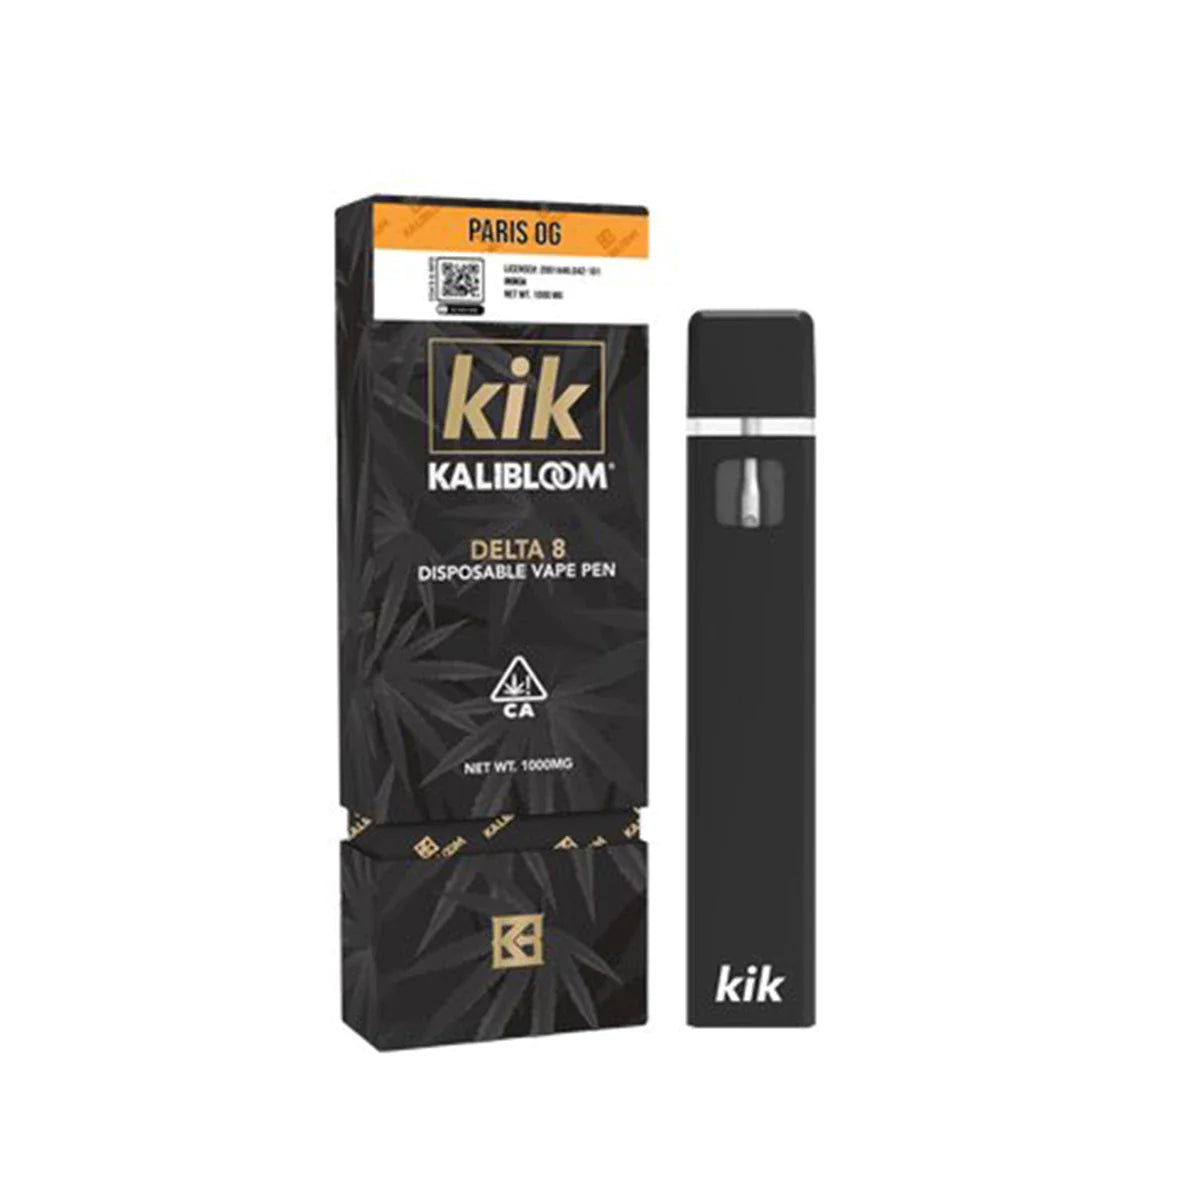 Kalibloom Kik Paris OG Delta 8 Disposable (1g) Best Price